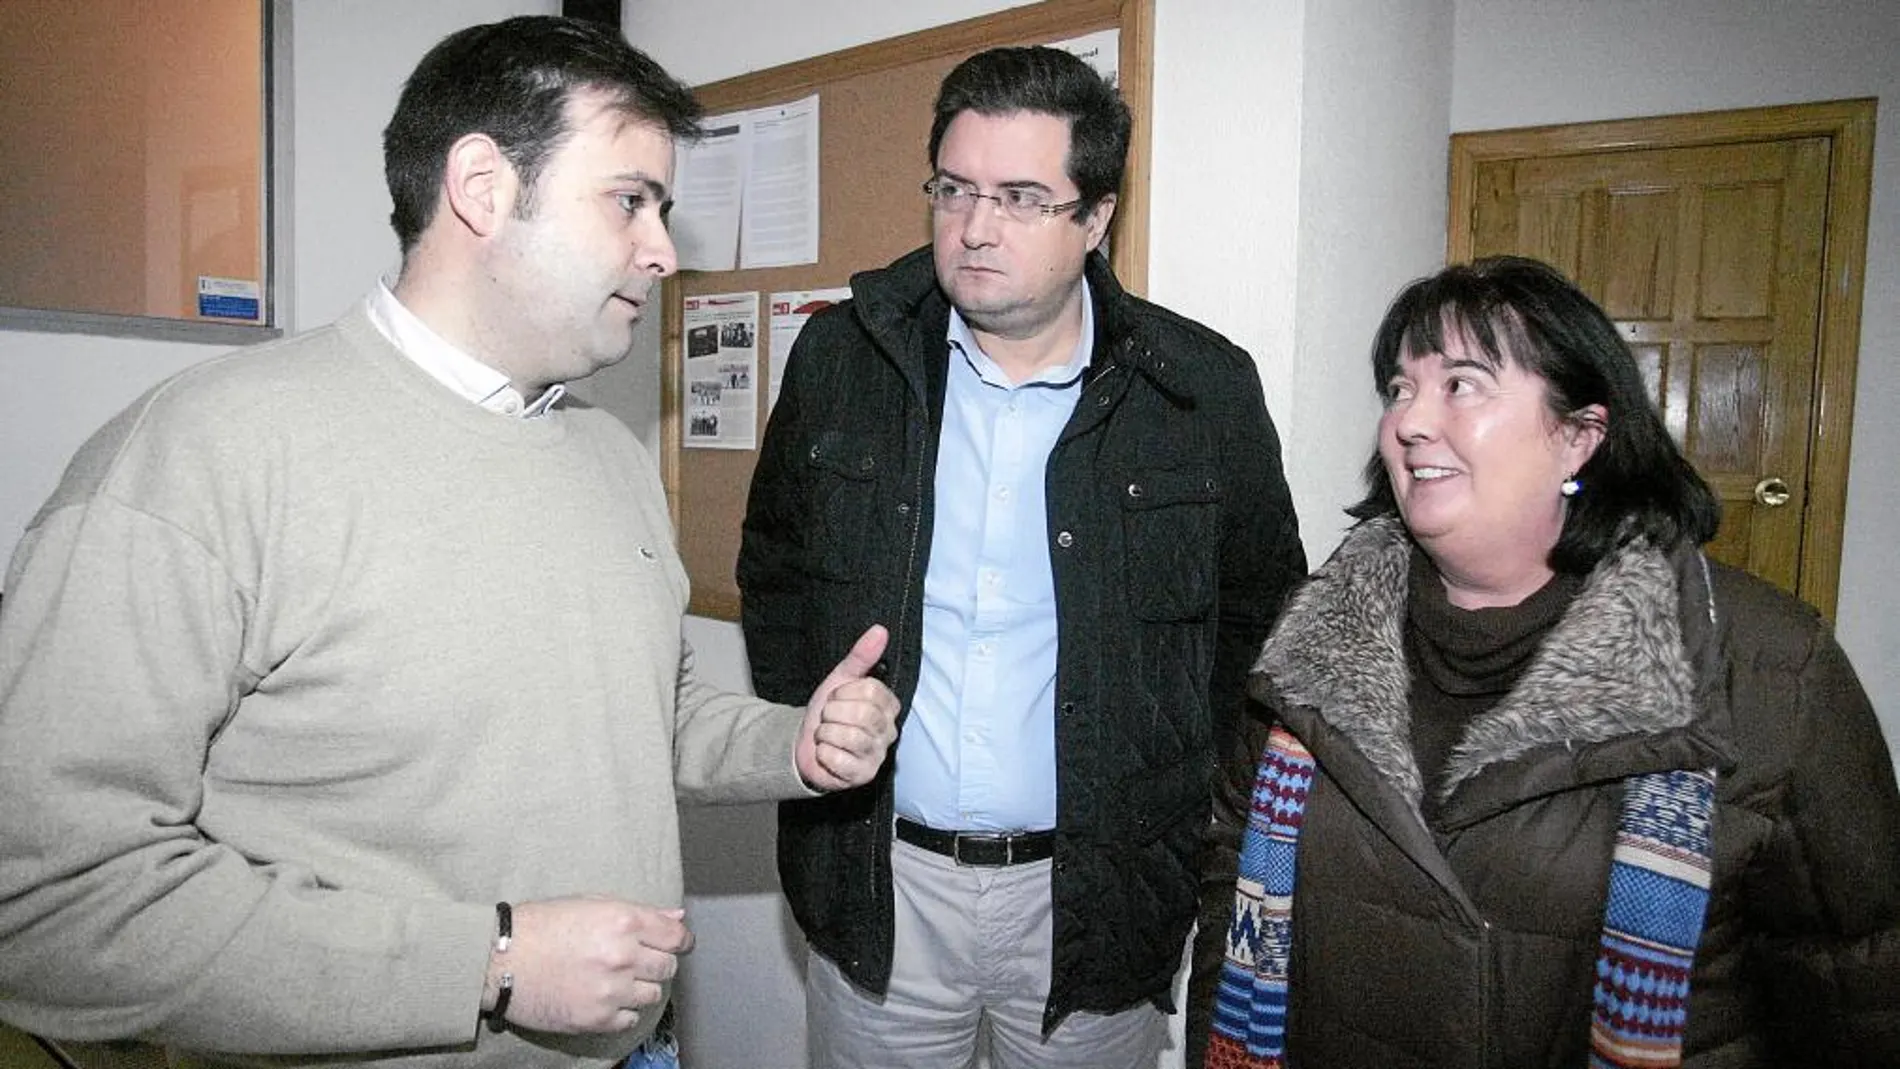 Óscar López escucha a Tino Rodríguez en presencia de Ana Durán, ayer en Villablino (León)